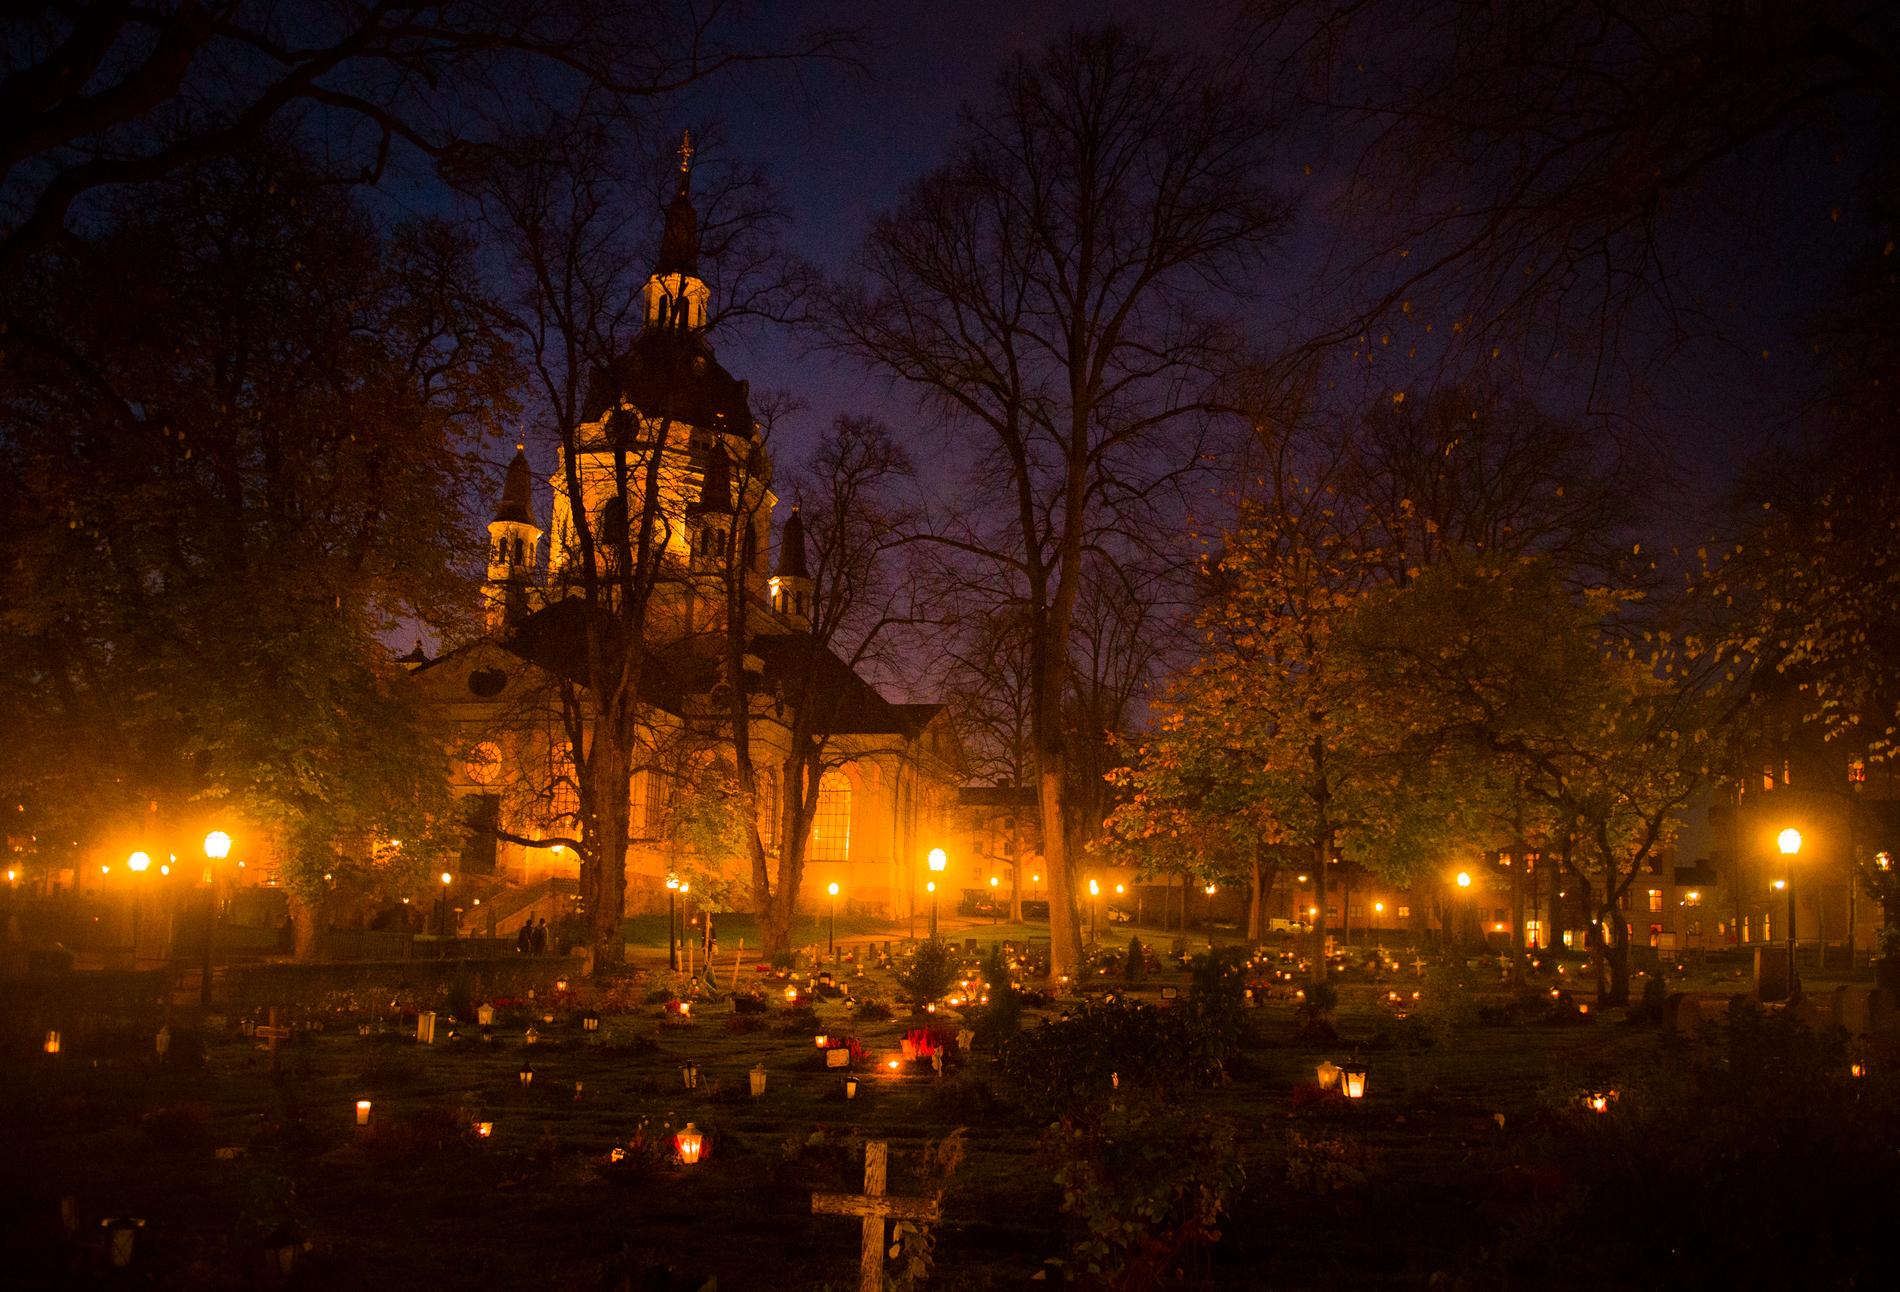 Allhelgonahelgen tänds ljus på landets kyrkogårdar. Här en bild från Katarina kyrkogård i Stockholm.